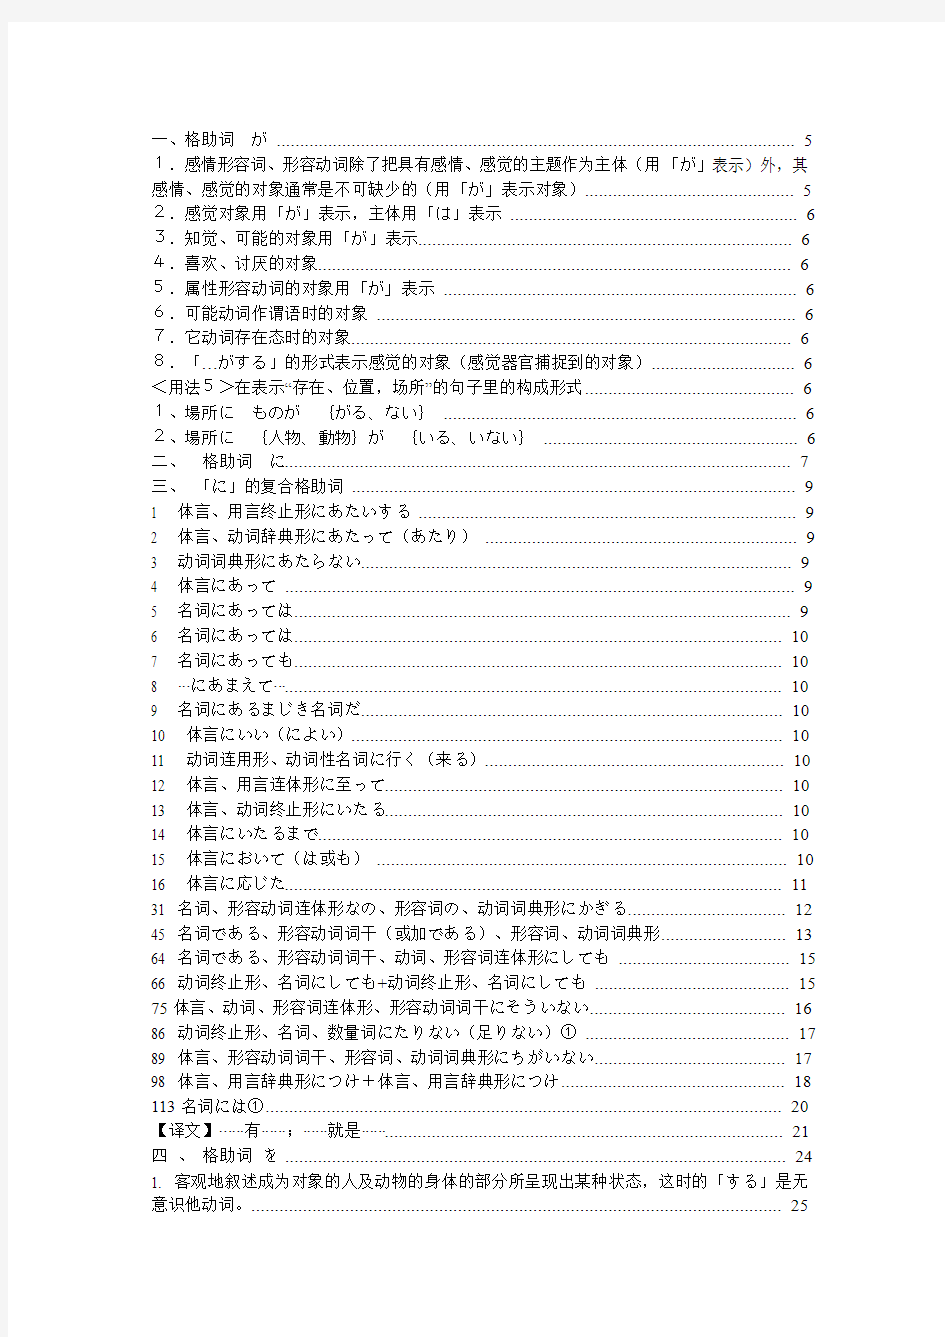 日语格助词全部学习笔记(免费)